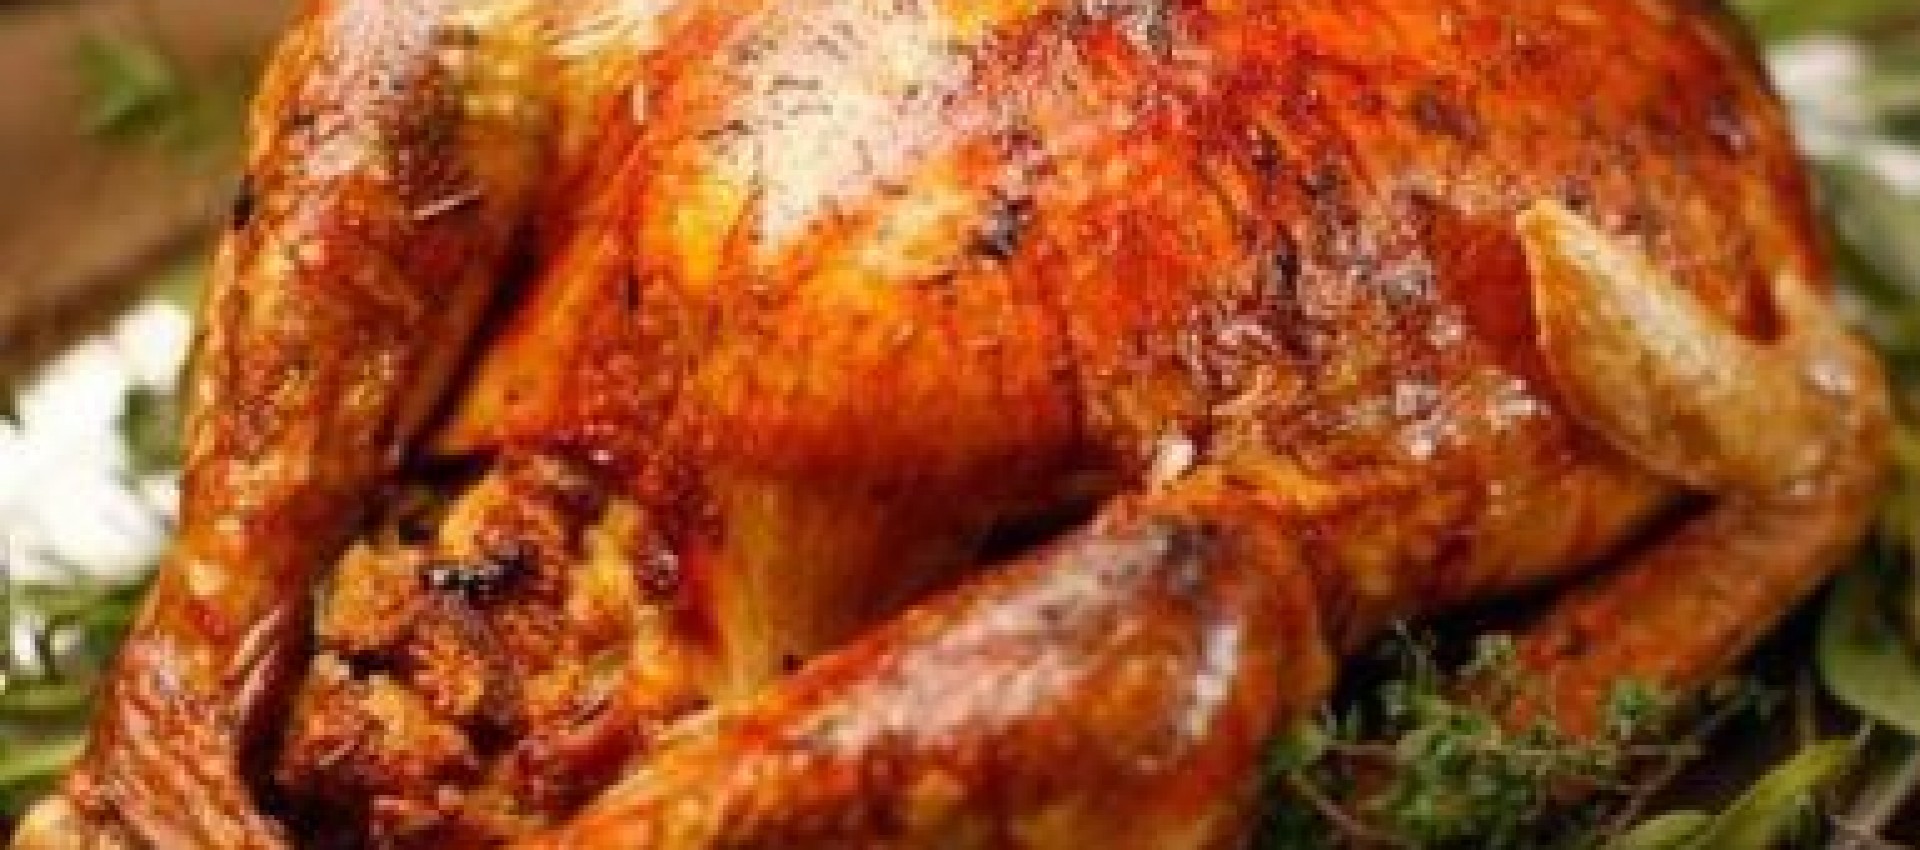 Baked Turkey Image